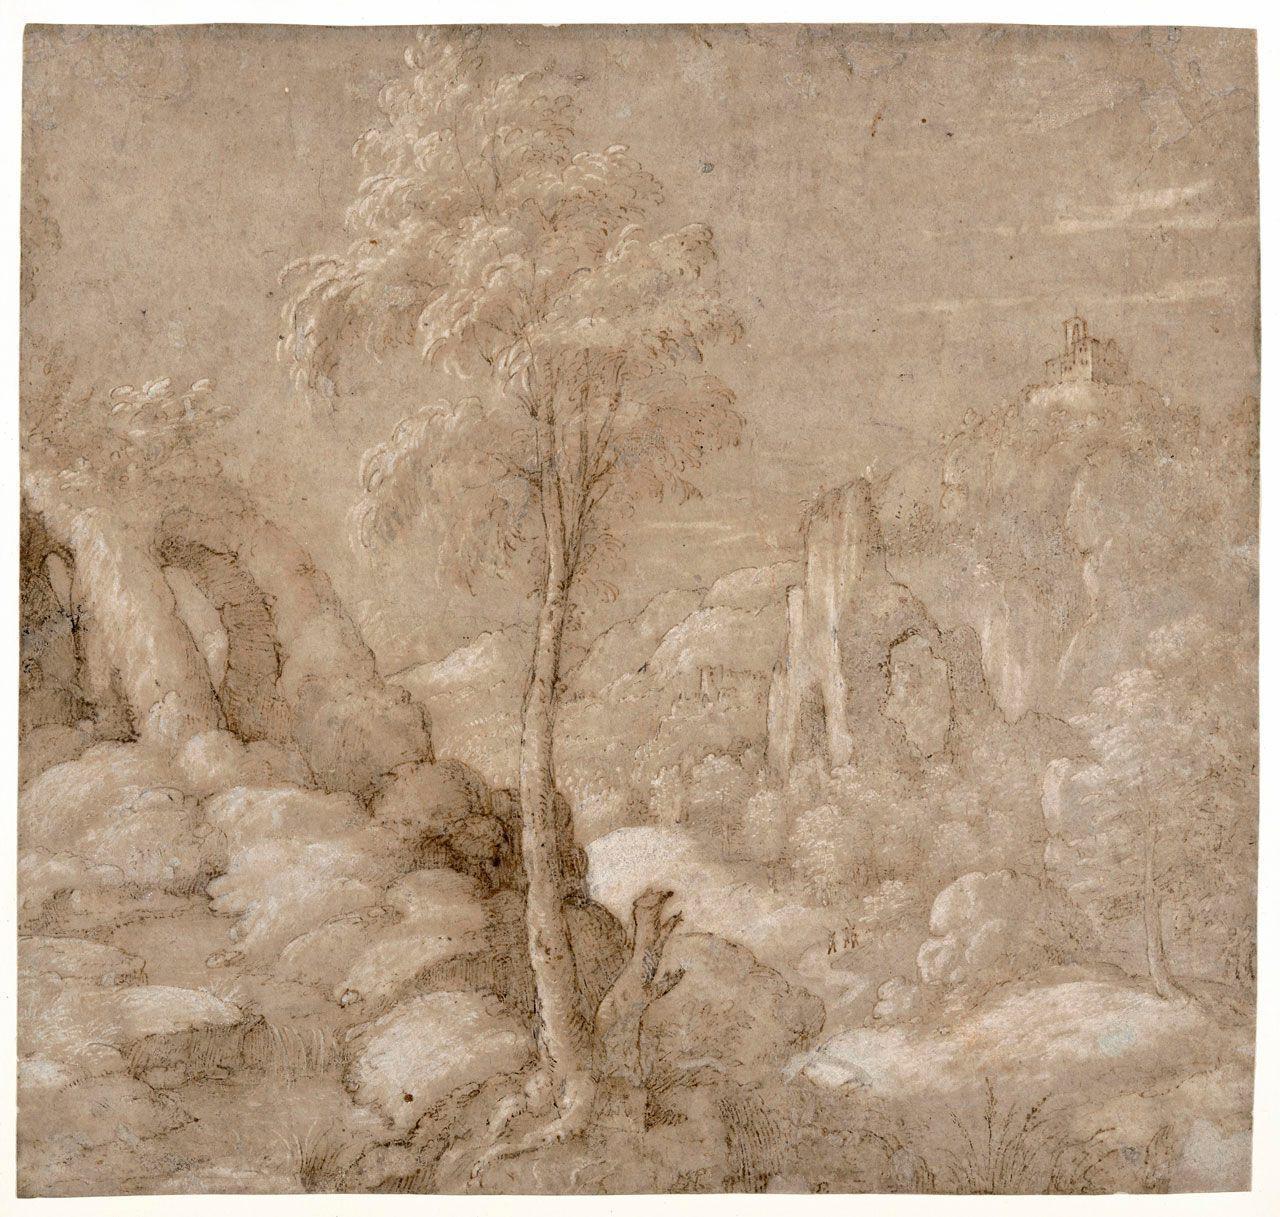 A Rocky Landscape with Trees
Gherardo  Cibo 
16th Century
2023.14.1